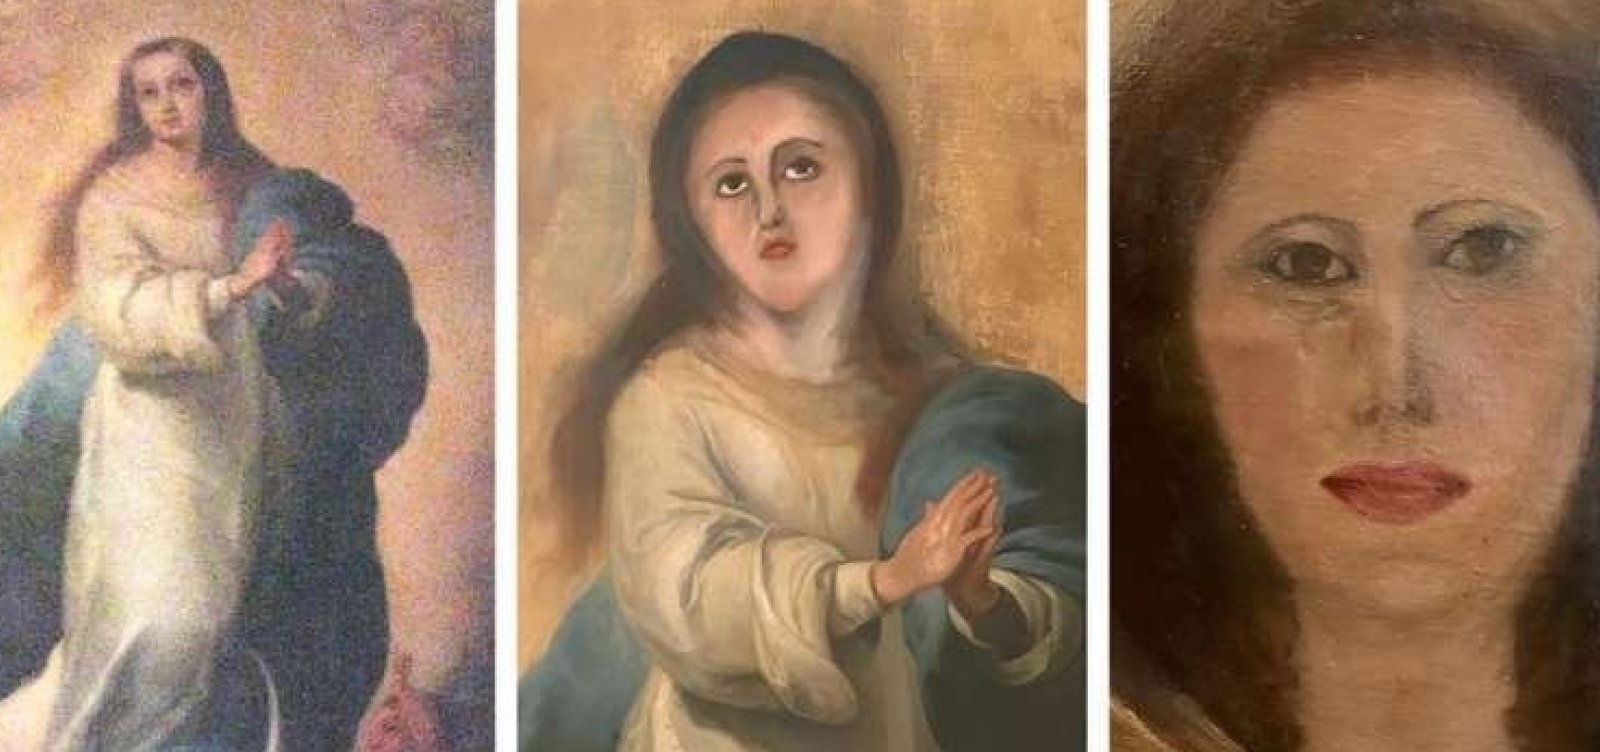 Novo desastre na restauração espanhola: Imaculada Conceição é desfigurada